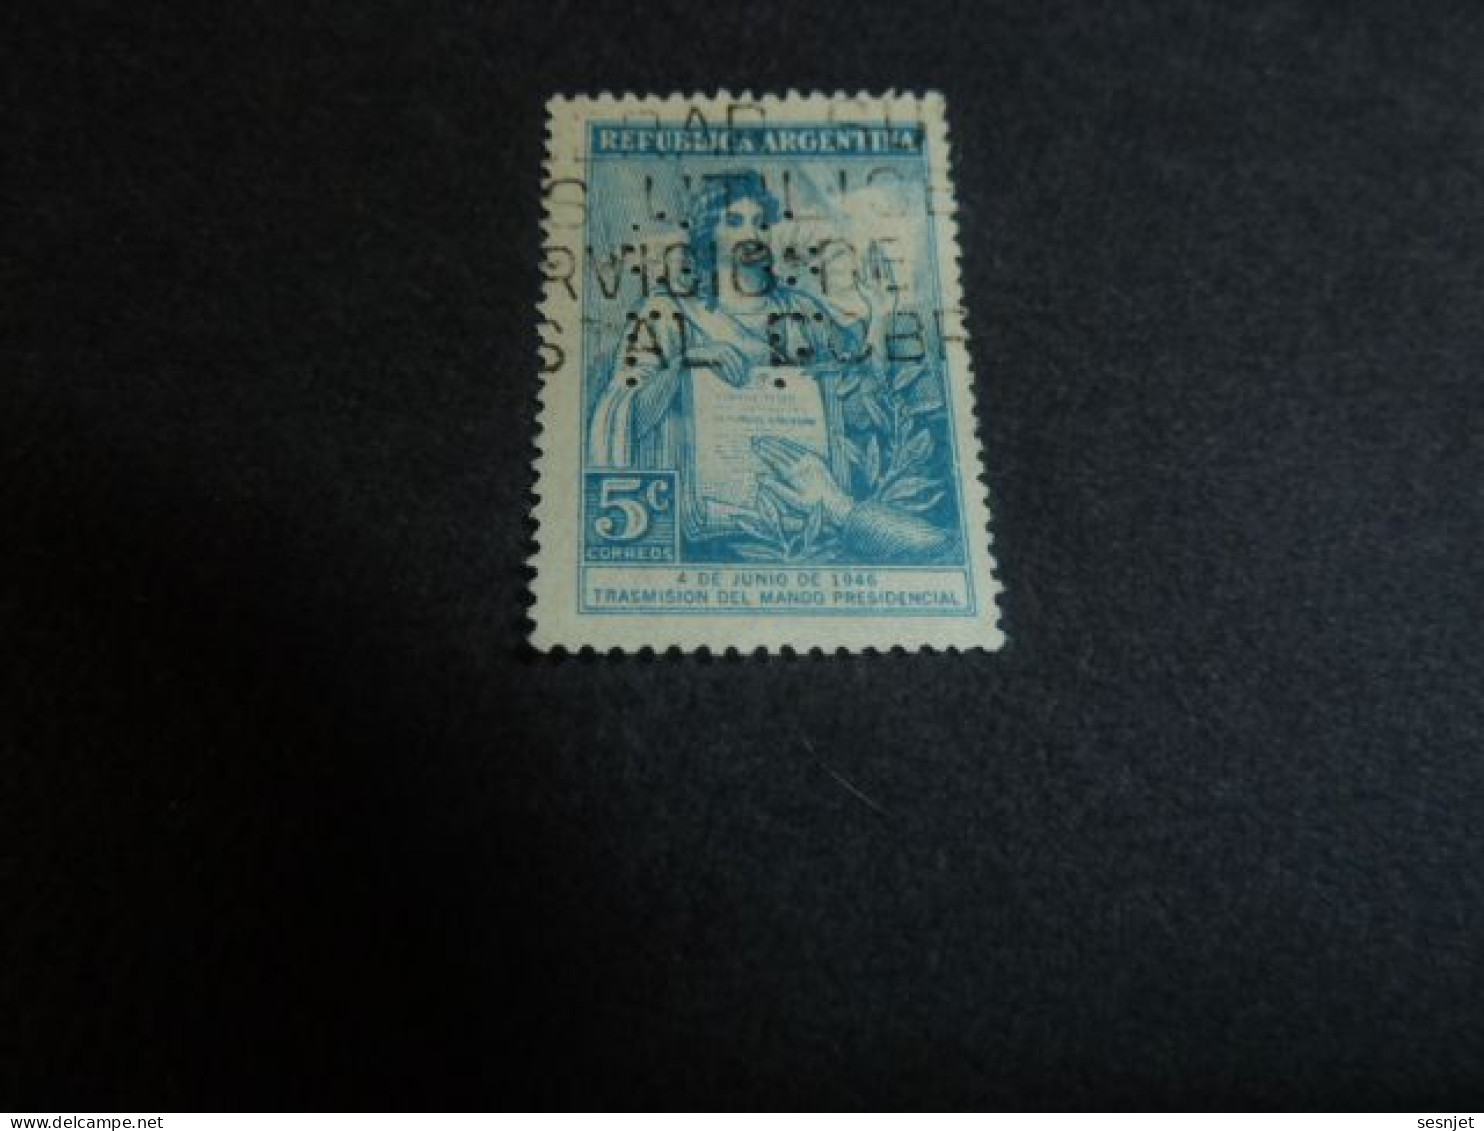 Republica Argentina - Pouvoir Présidence Gal Péron - 5 C. Perforé - Yt 466 - Bleu-clair - Oblitéré - Année 1947 - - Usati